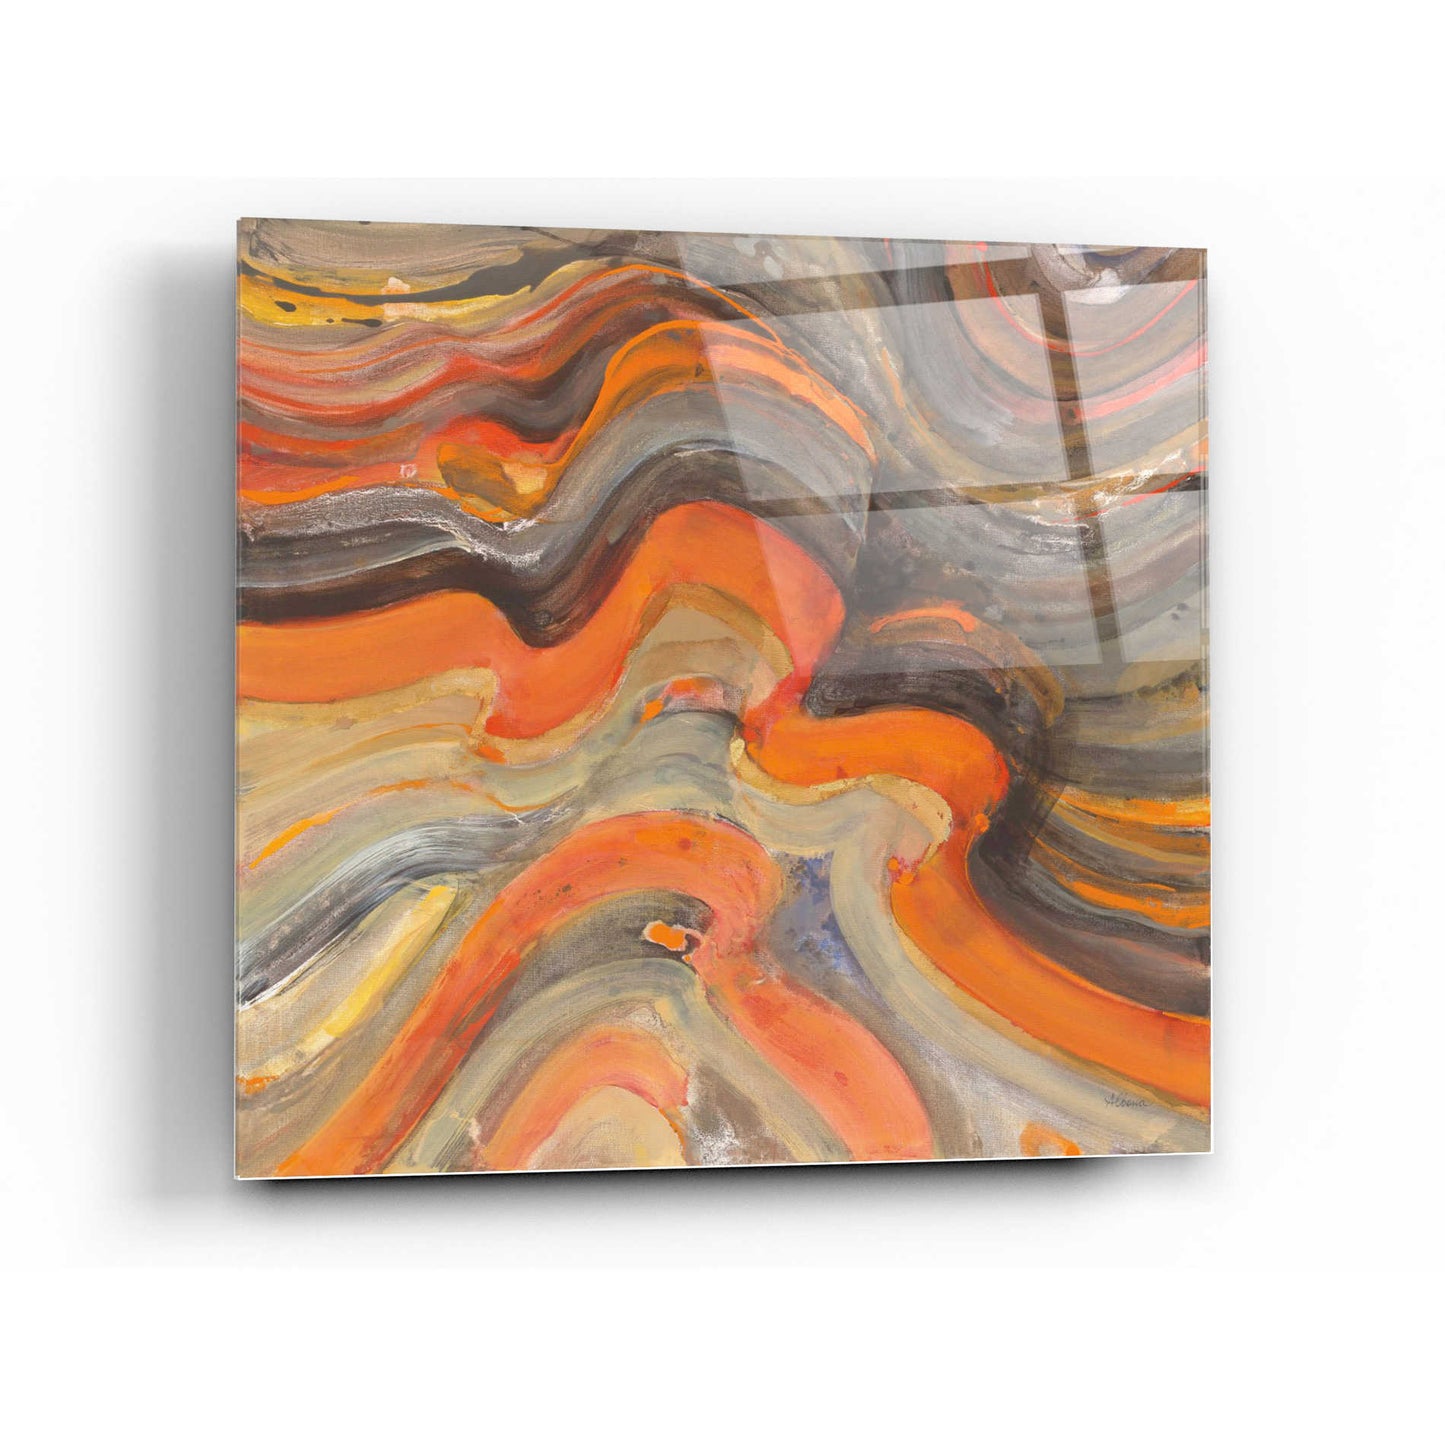 Epic Art 'Floating Lava' by Albena Hristova, Acrylic Glass Wall Art,24x24